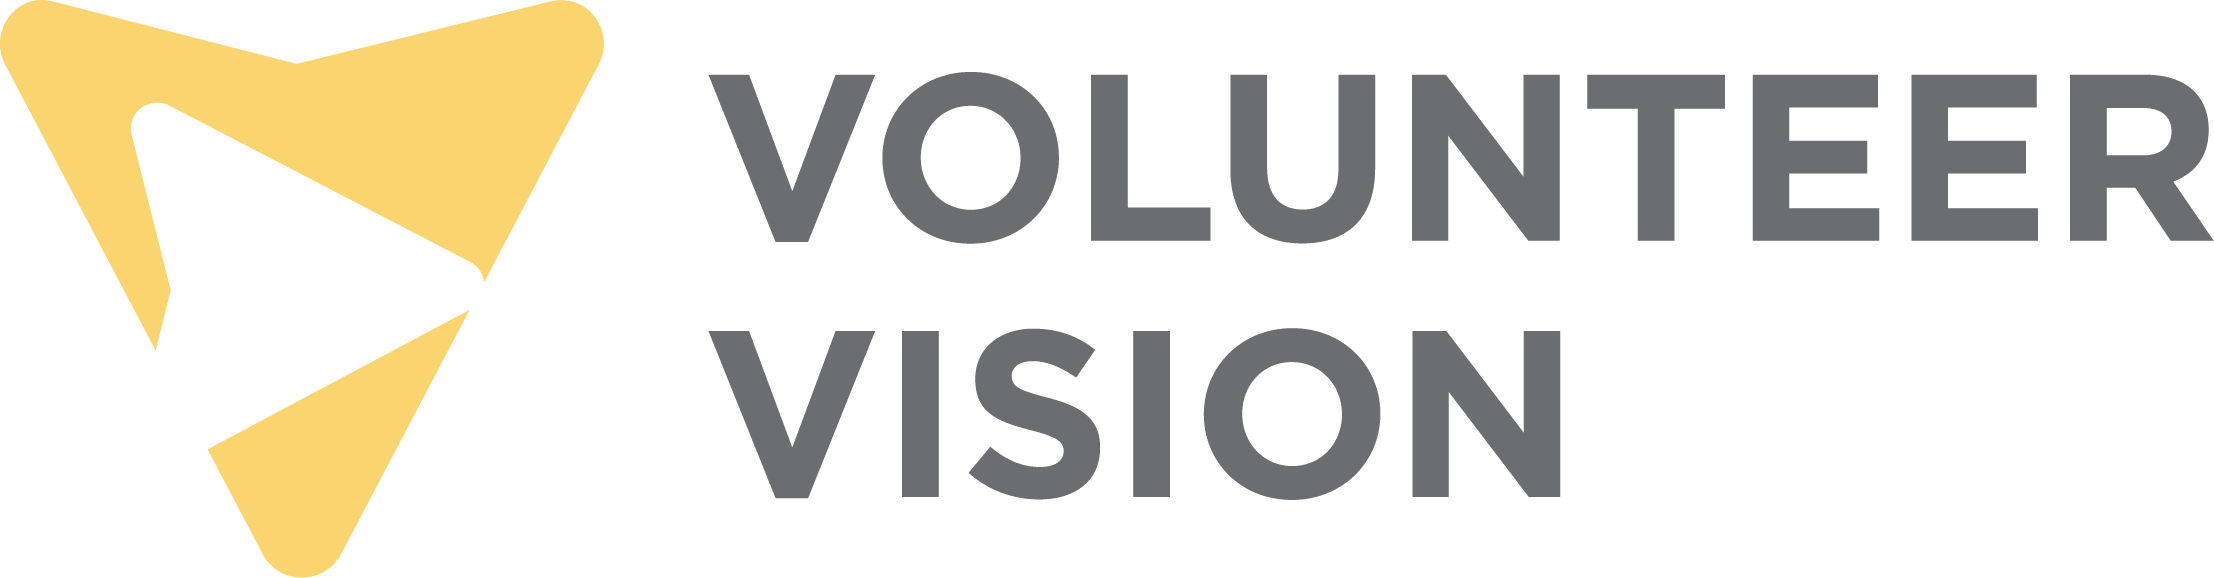 Volunteer Vision logo